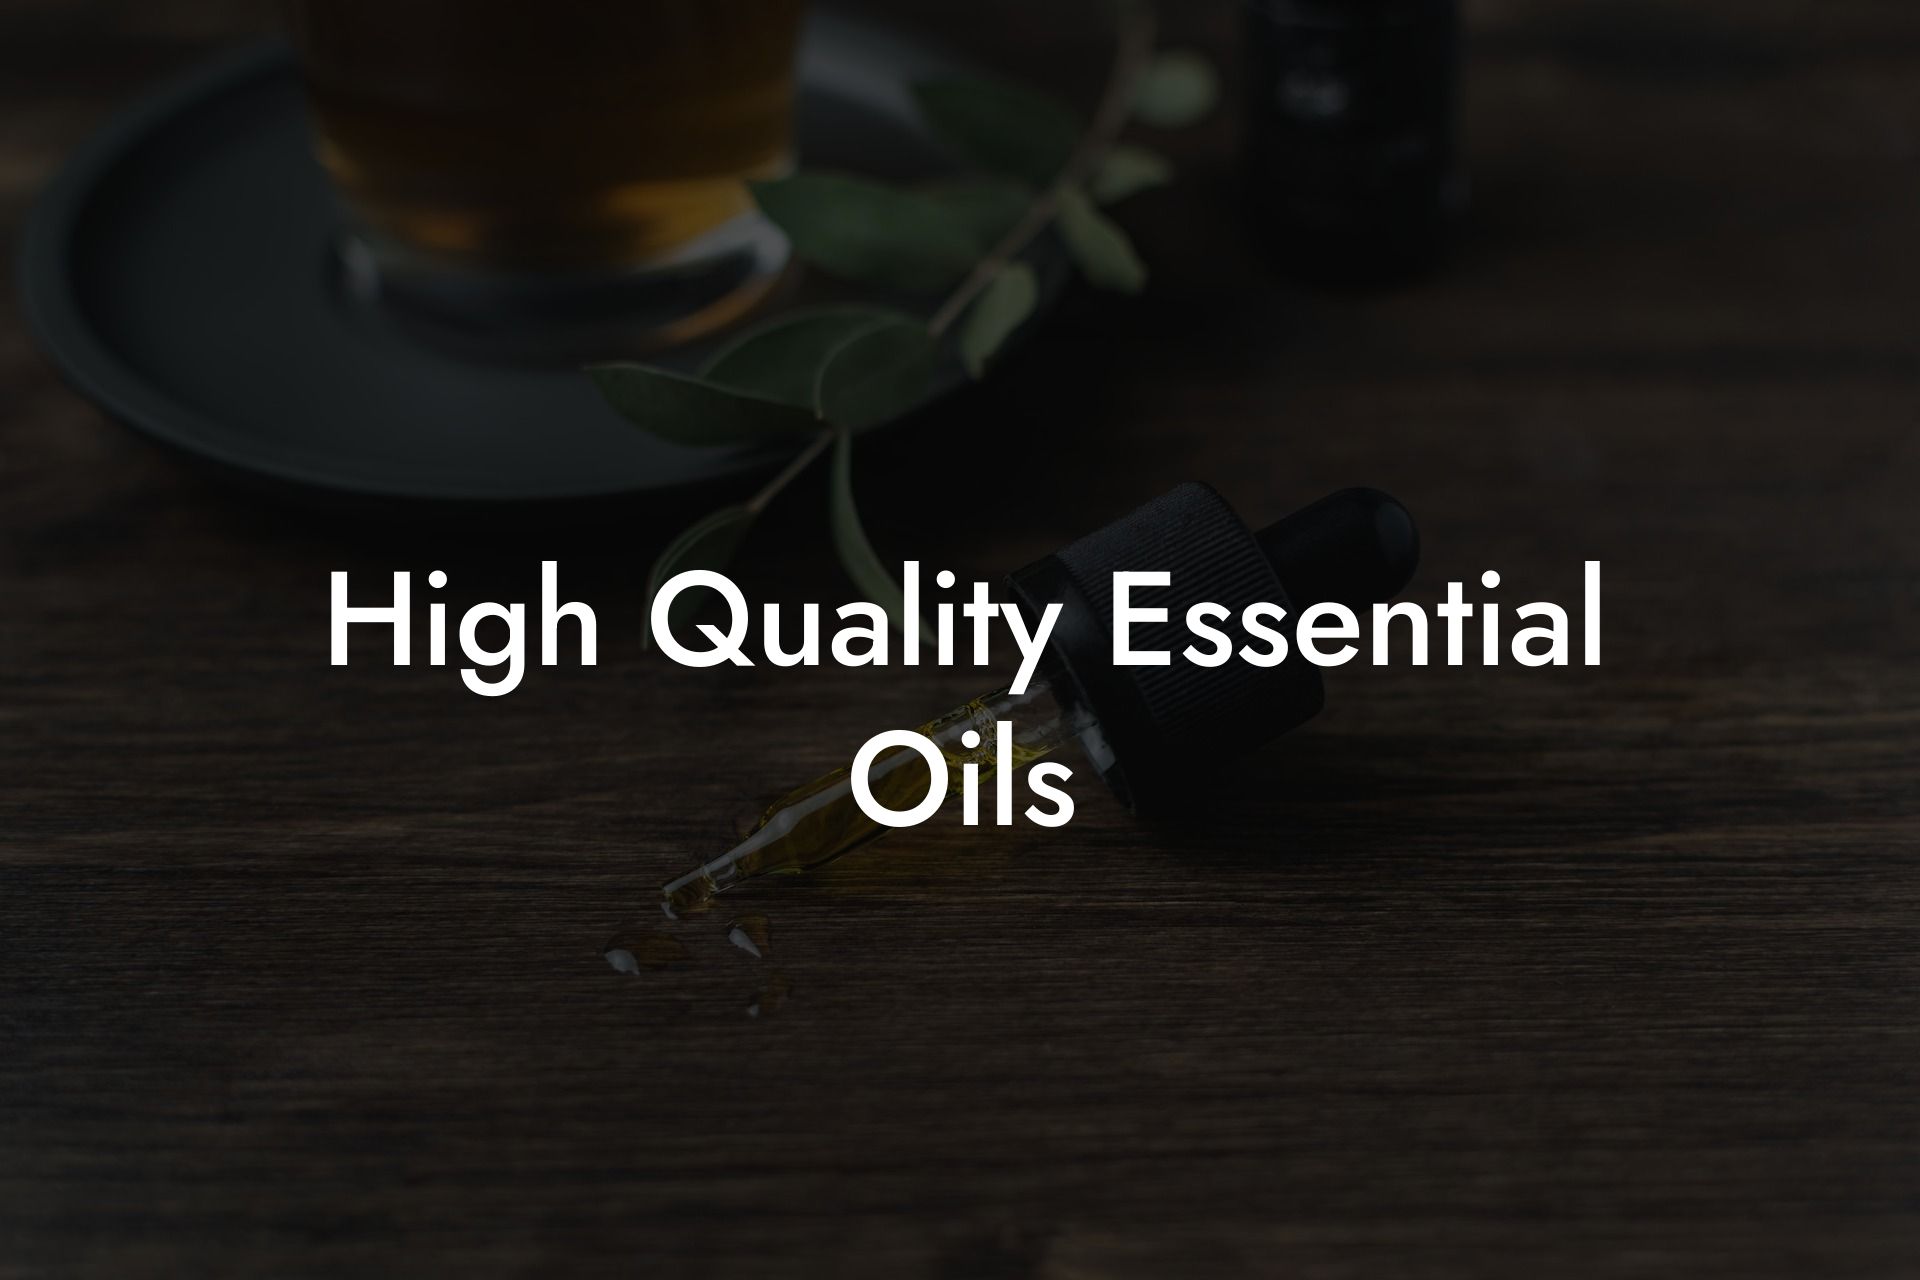 High Quality Essential Oils